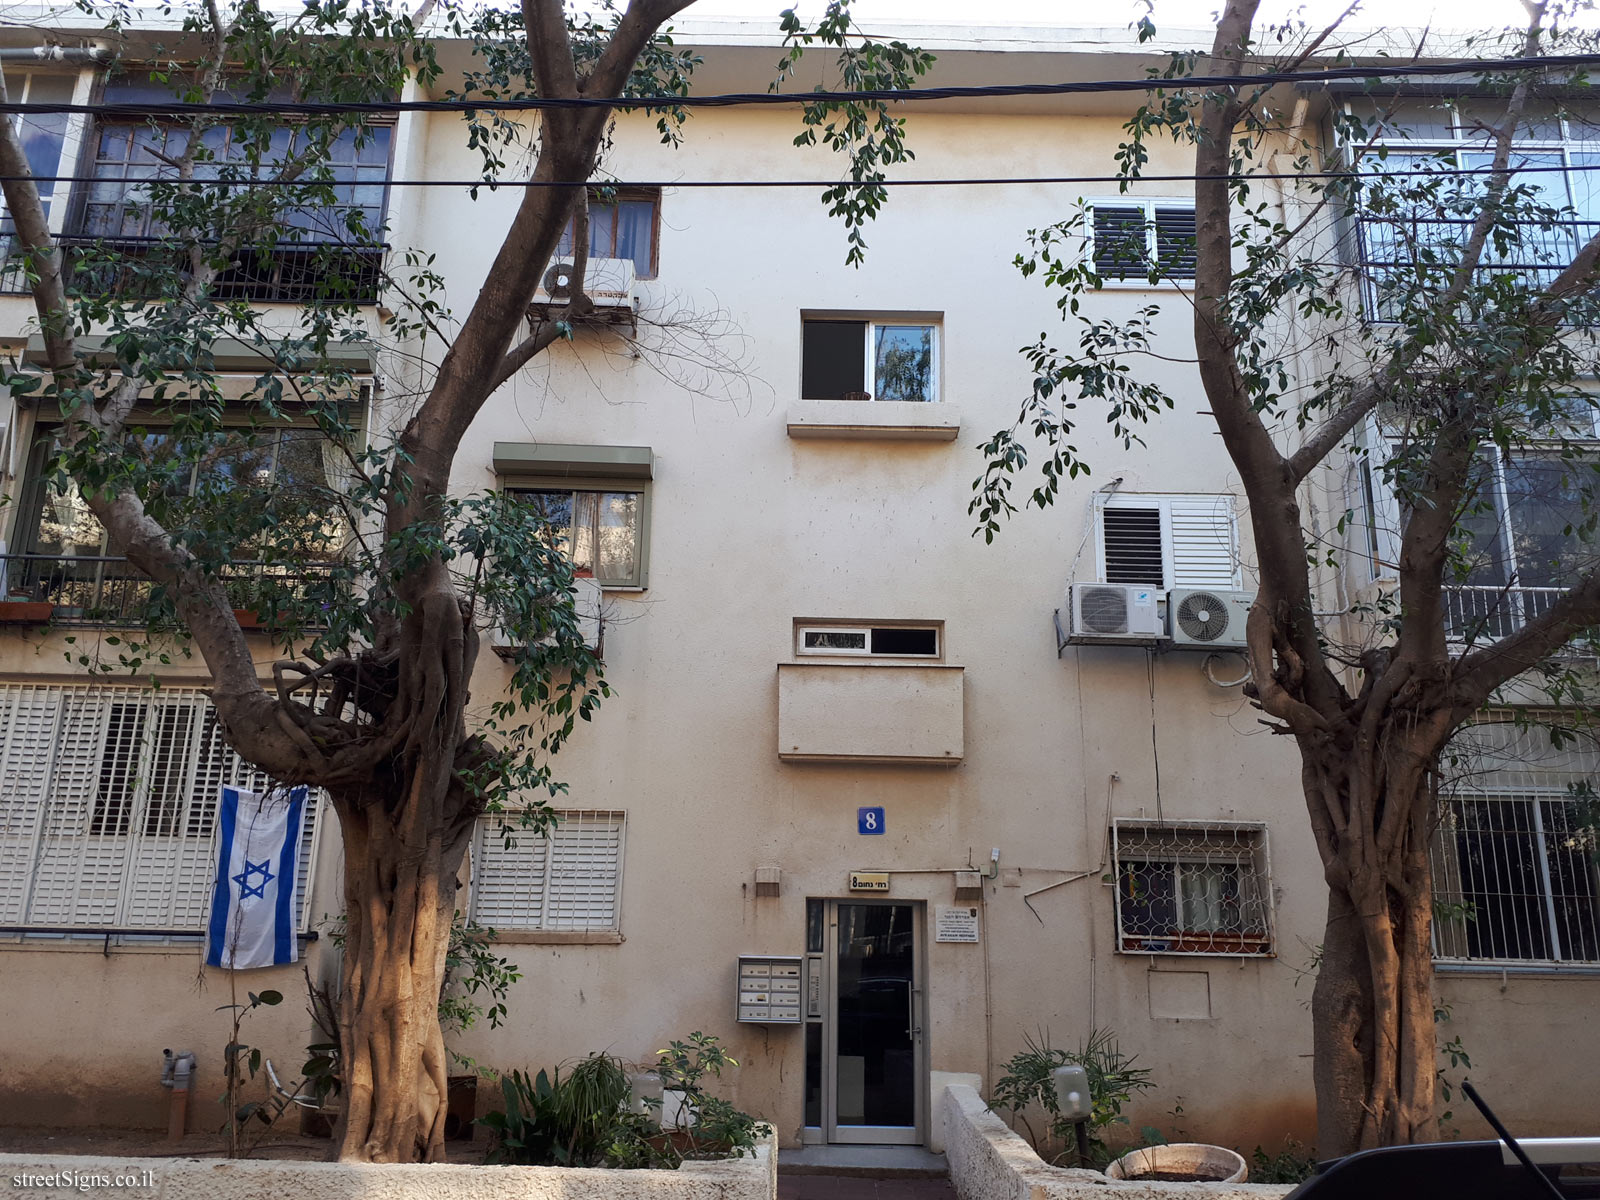 The house of Avraham Heffner - Nakhum ha-Navi St 8, Tel Aviv-Yafo